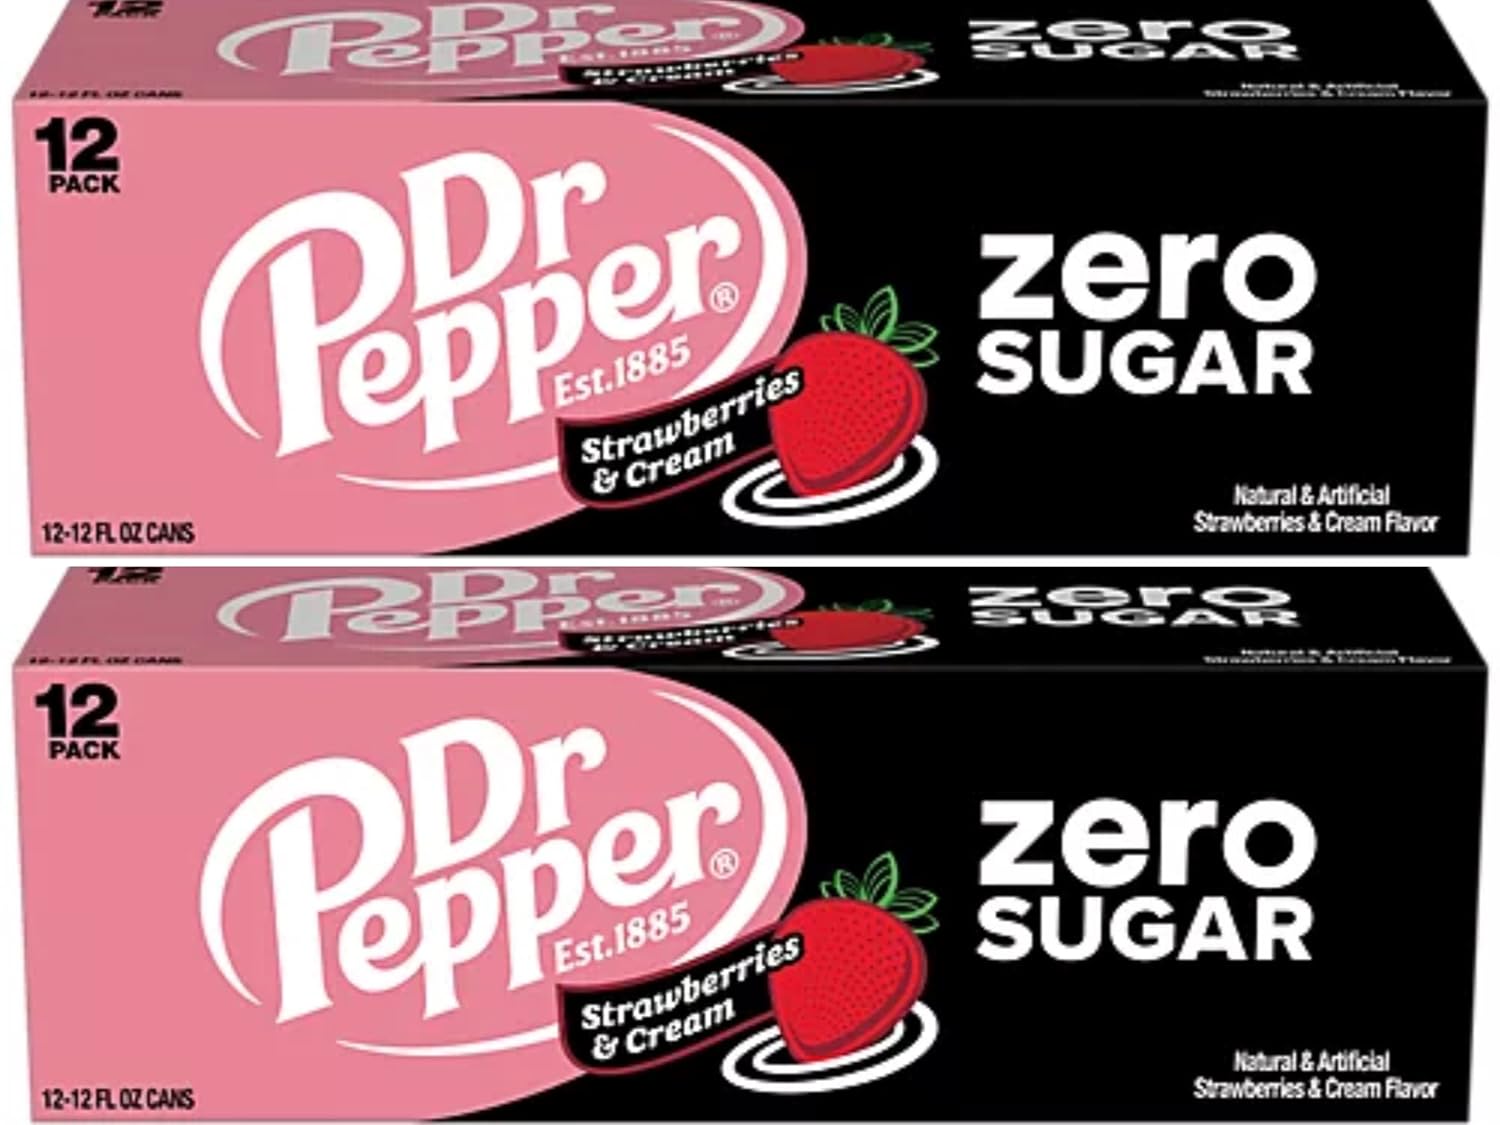 Dr Pepper, 12 fl oz cans, 24 pack